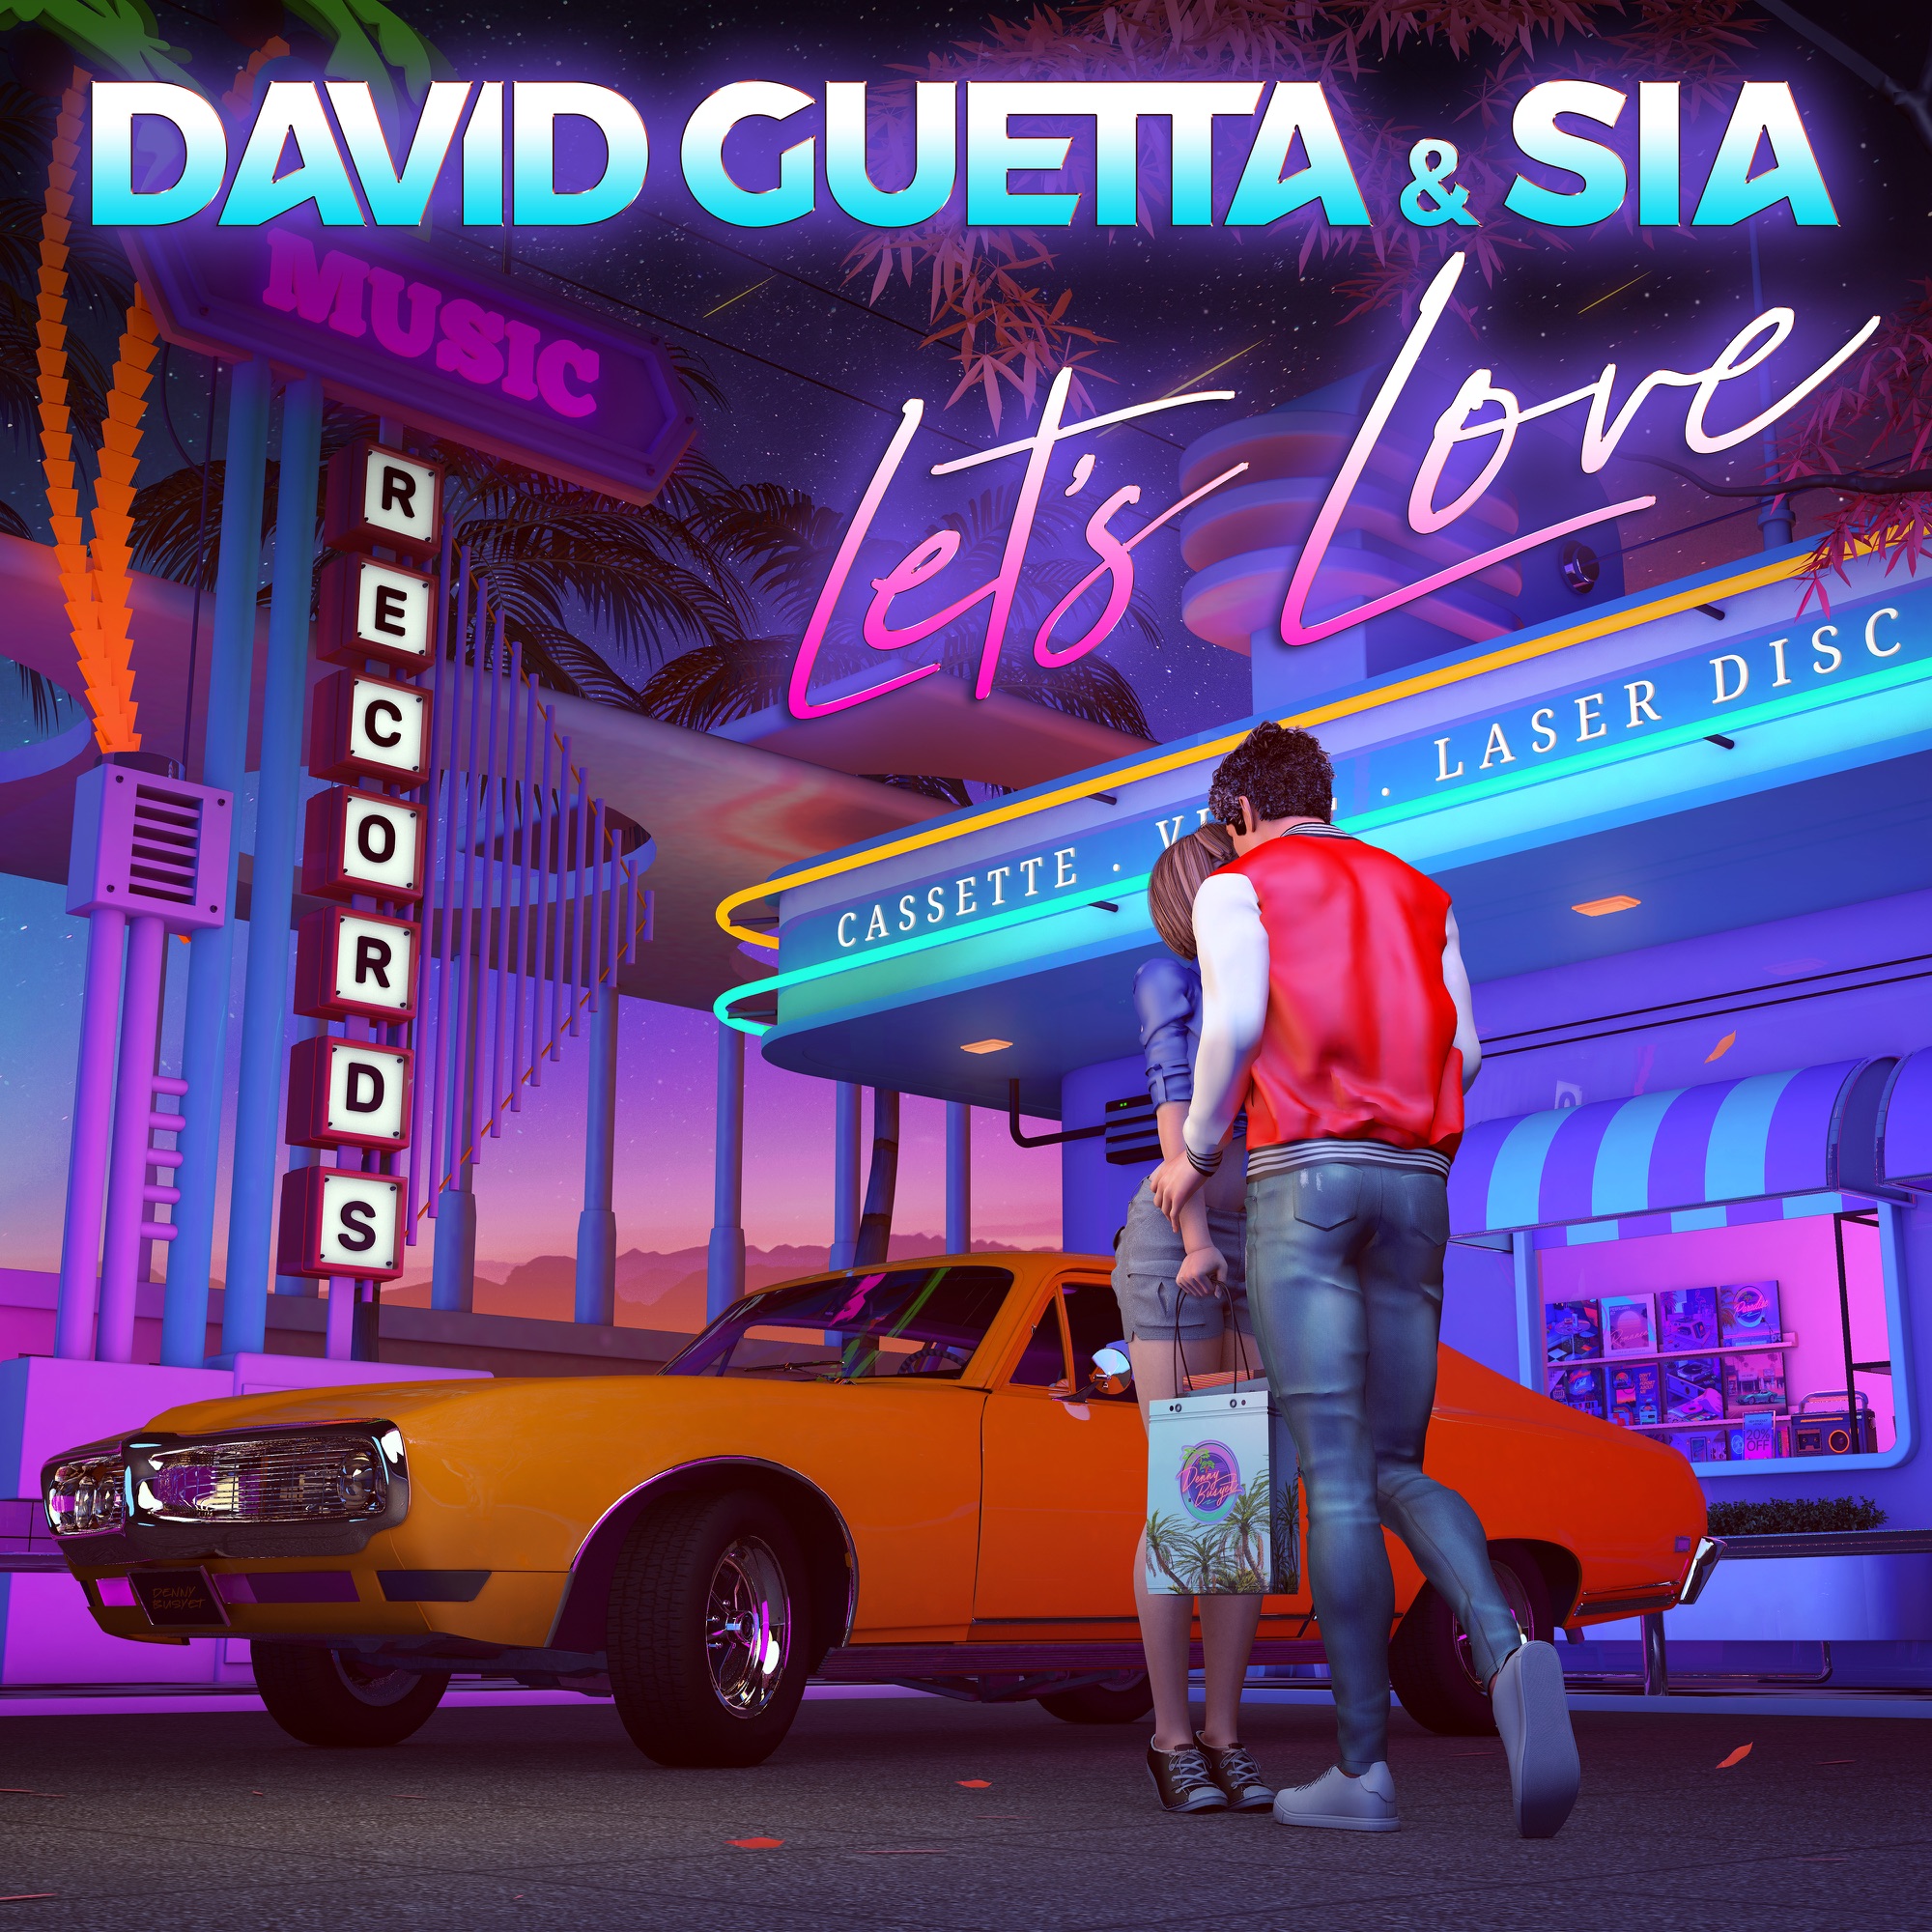 David Guetta & Sia - Let's Love - Single